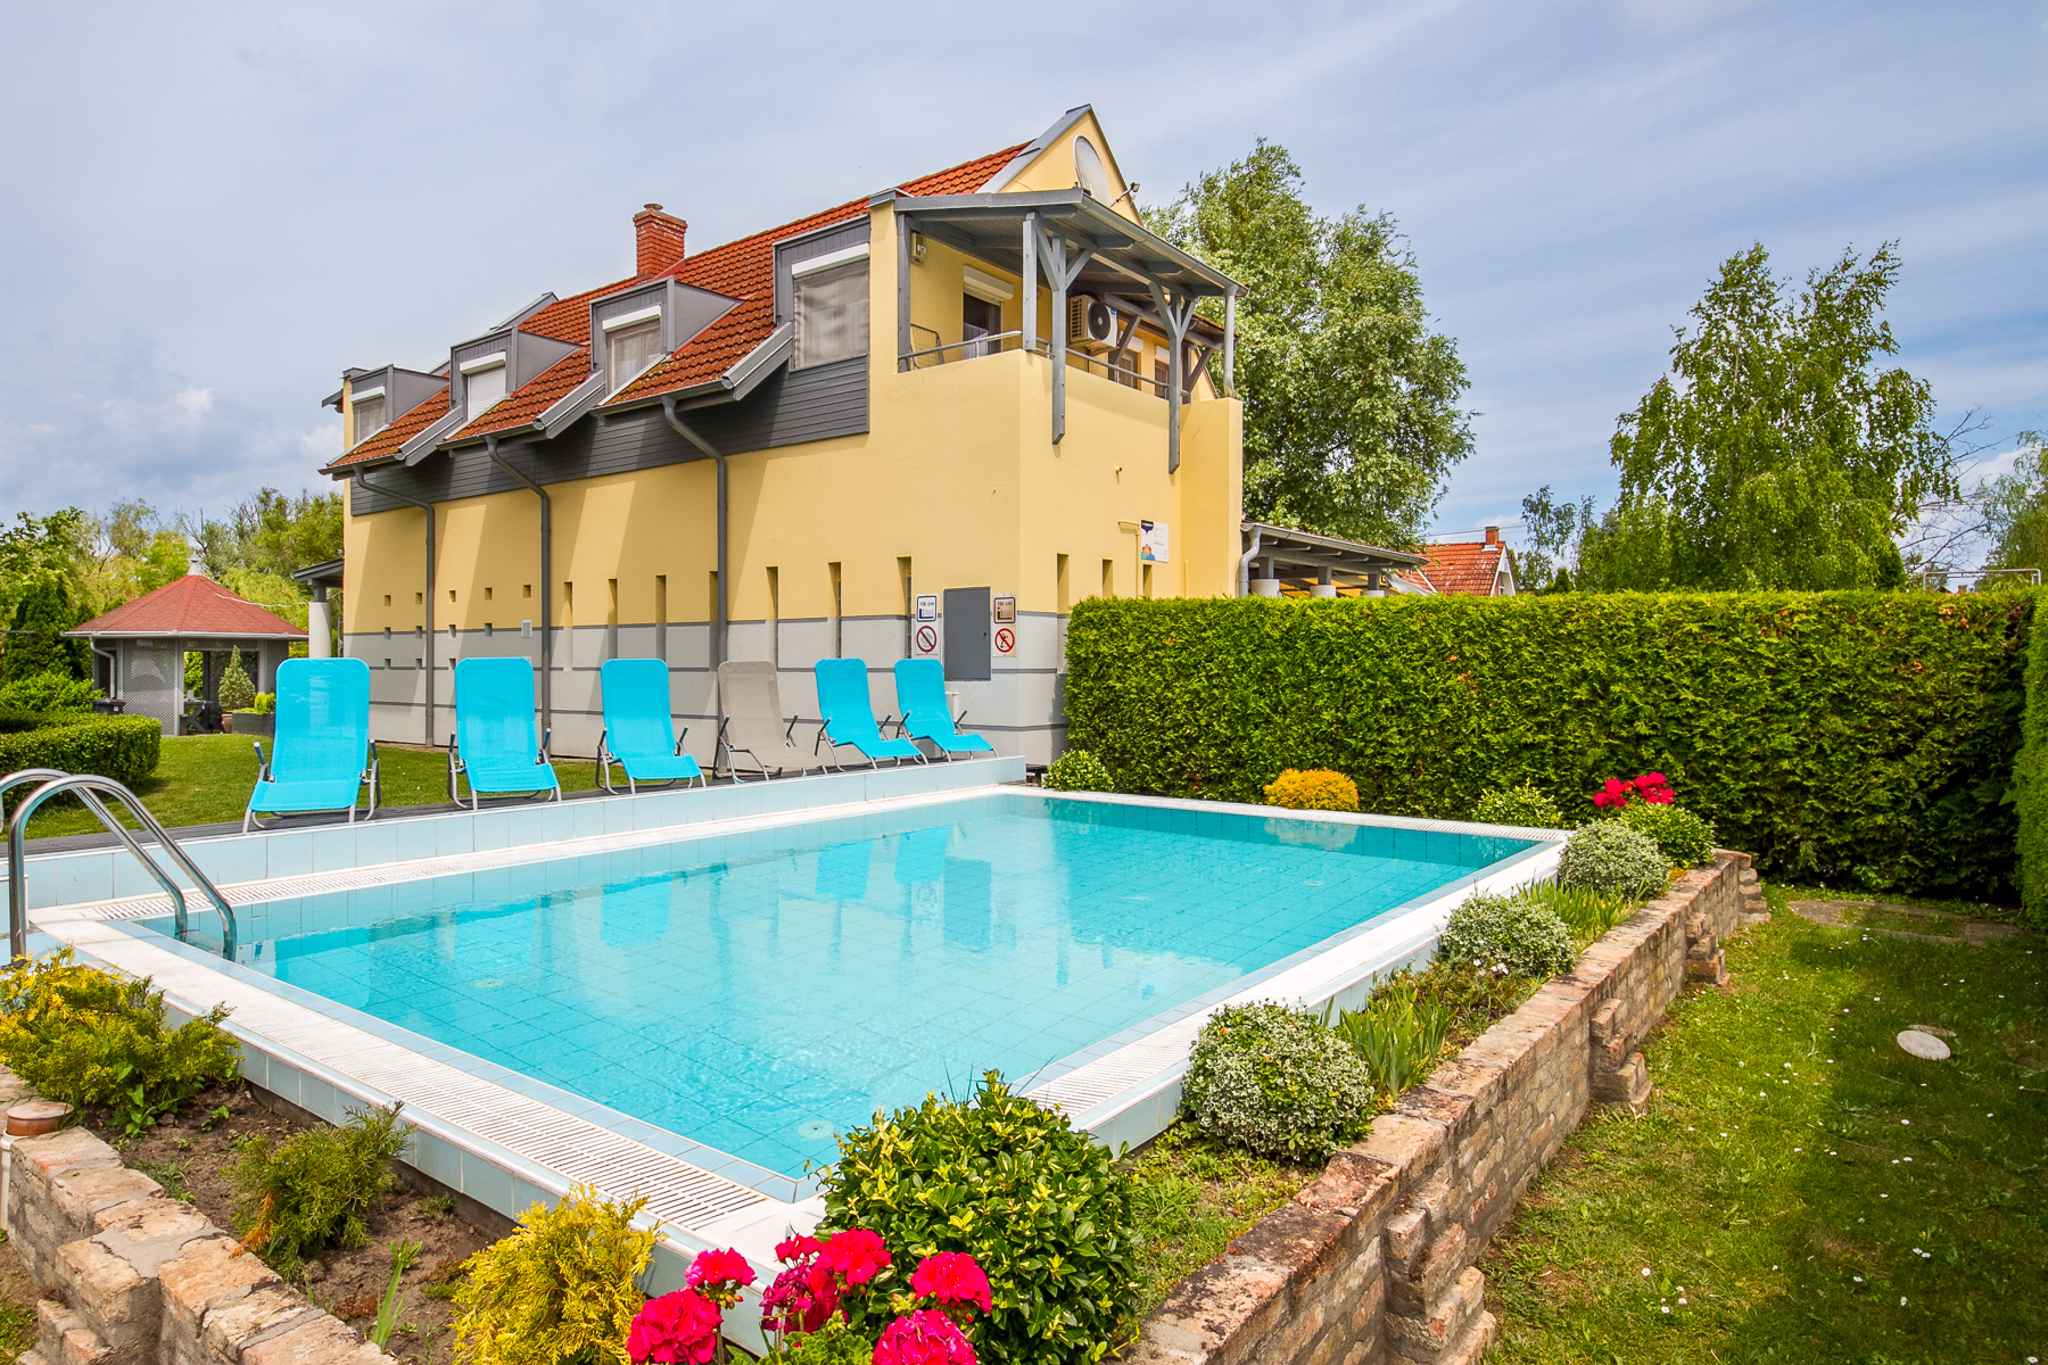 Ferienwohnung mit Klimaanlage, Pool, freiem Strand  in Ungarn